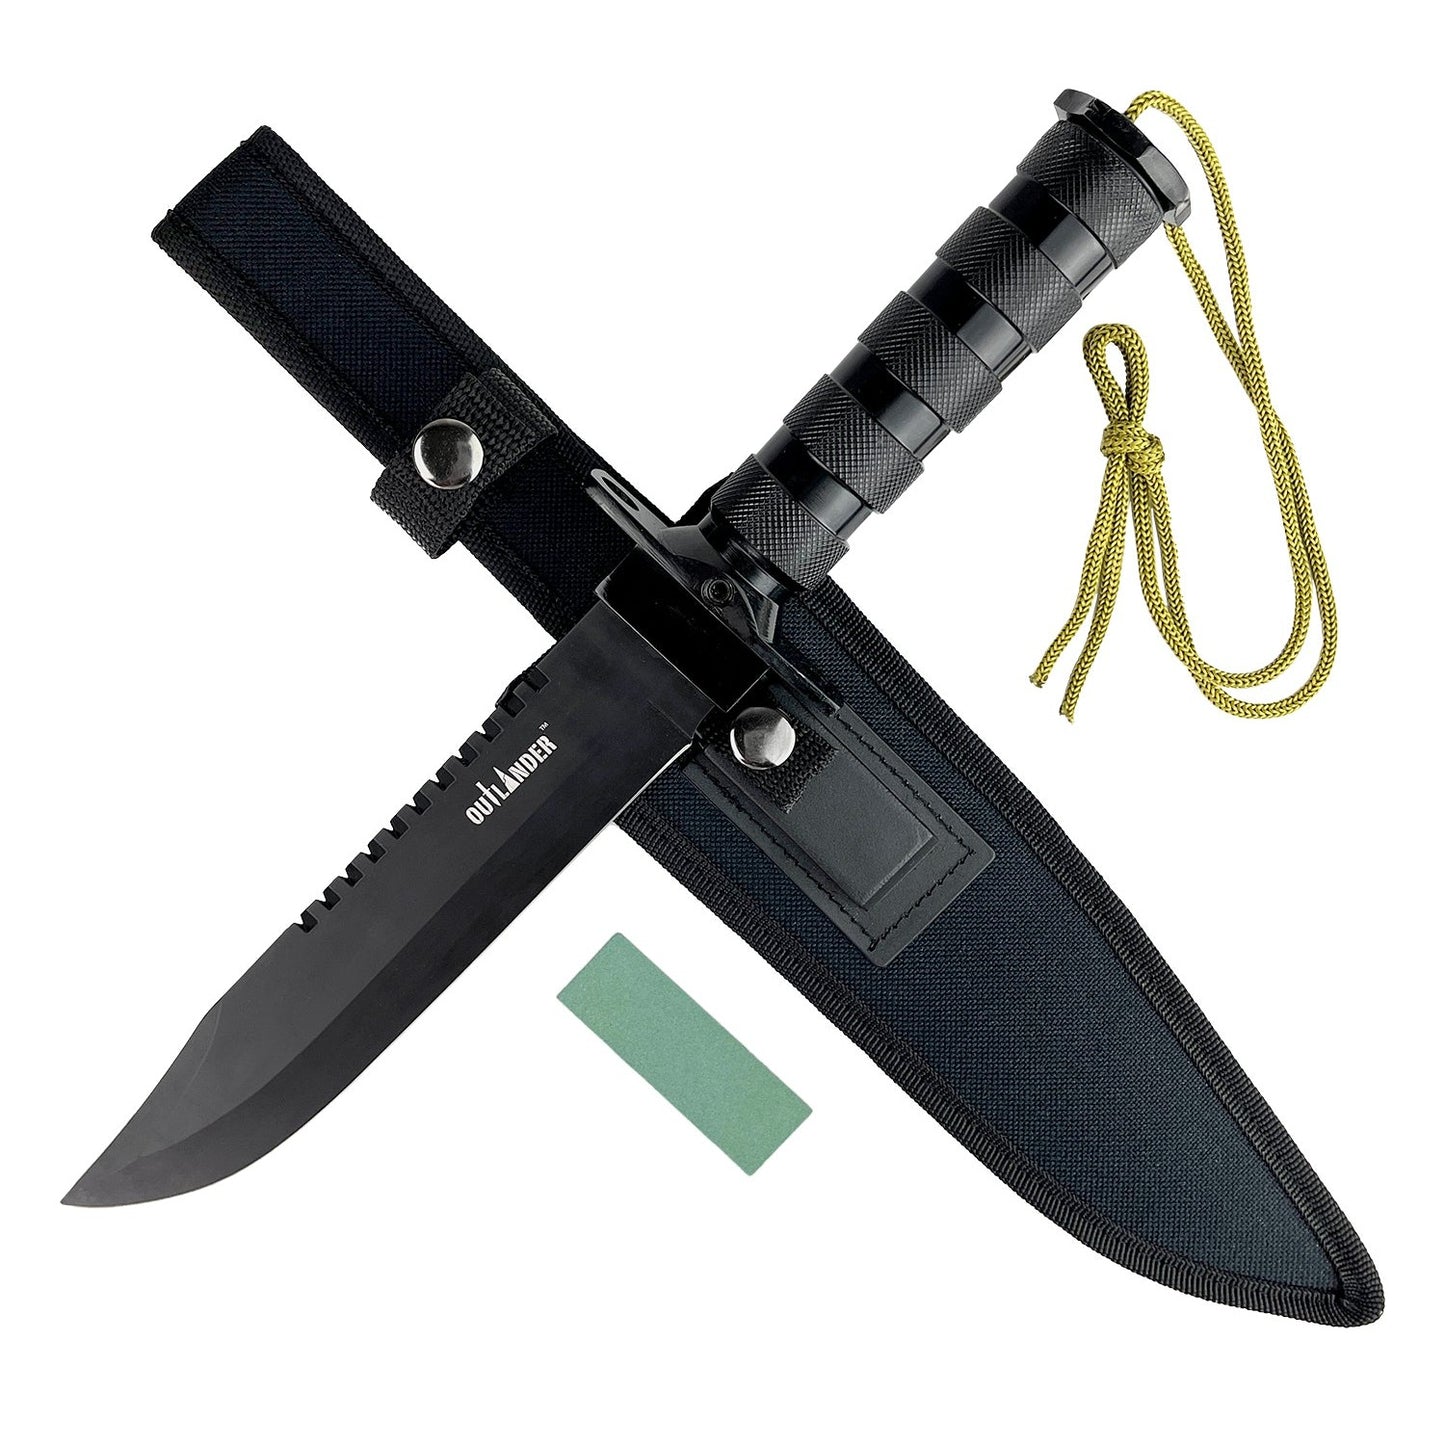 Outlander 9" Black Blade Hunting Knife